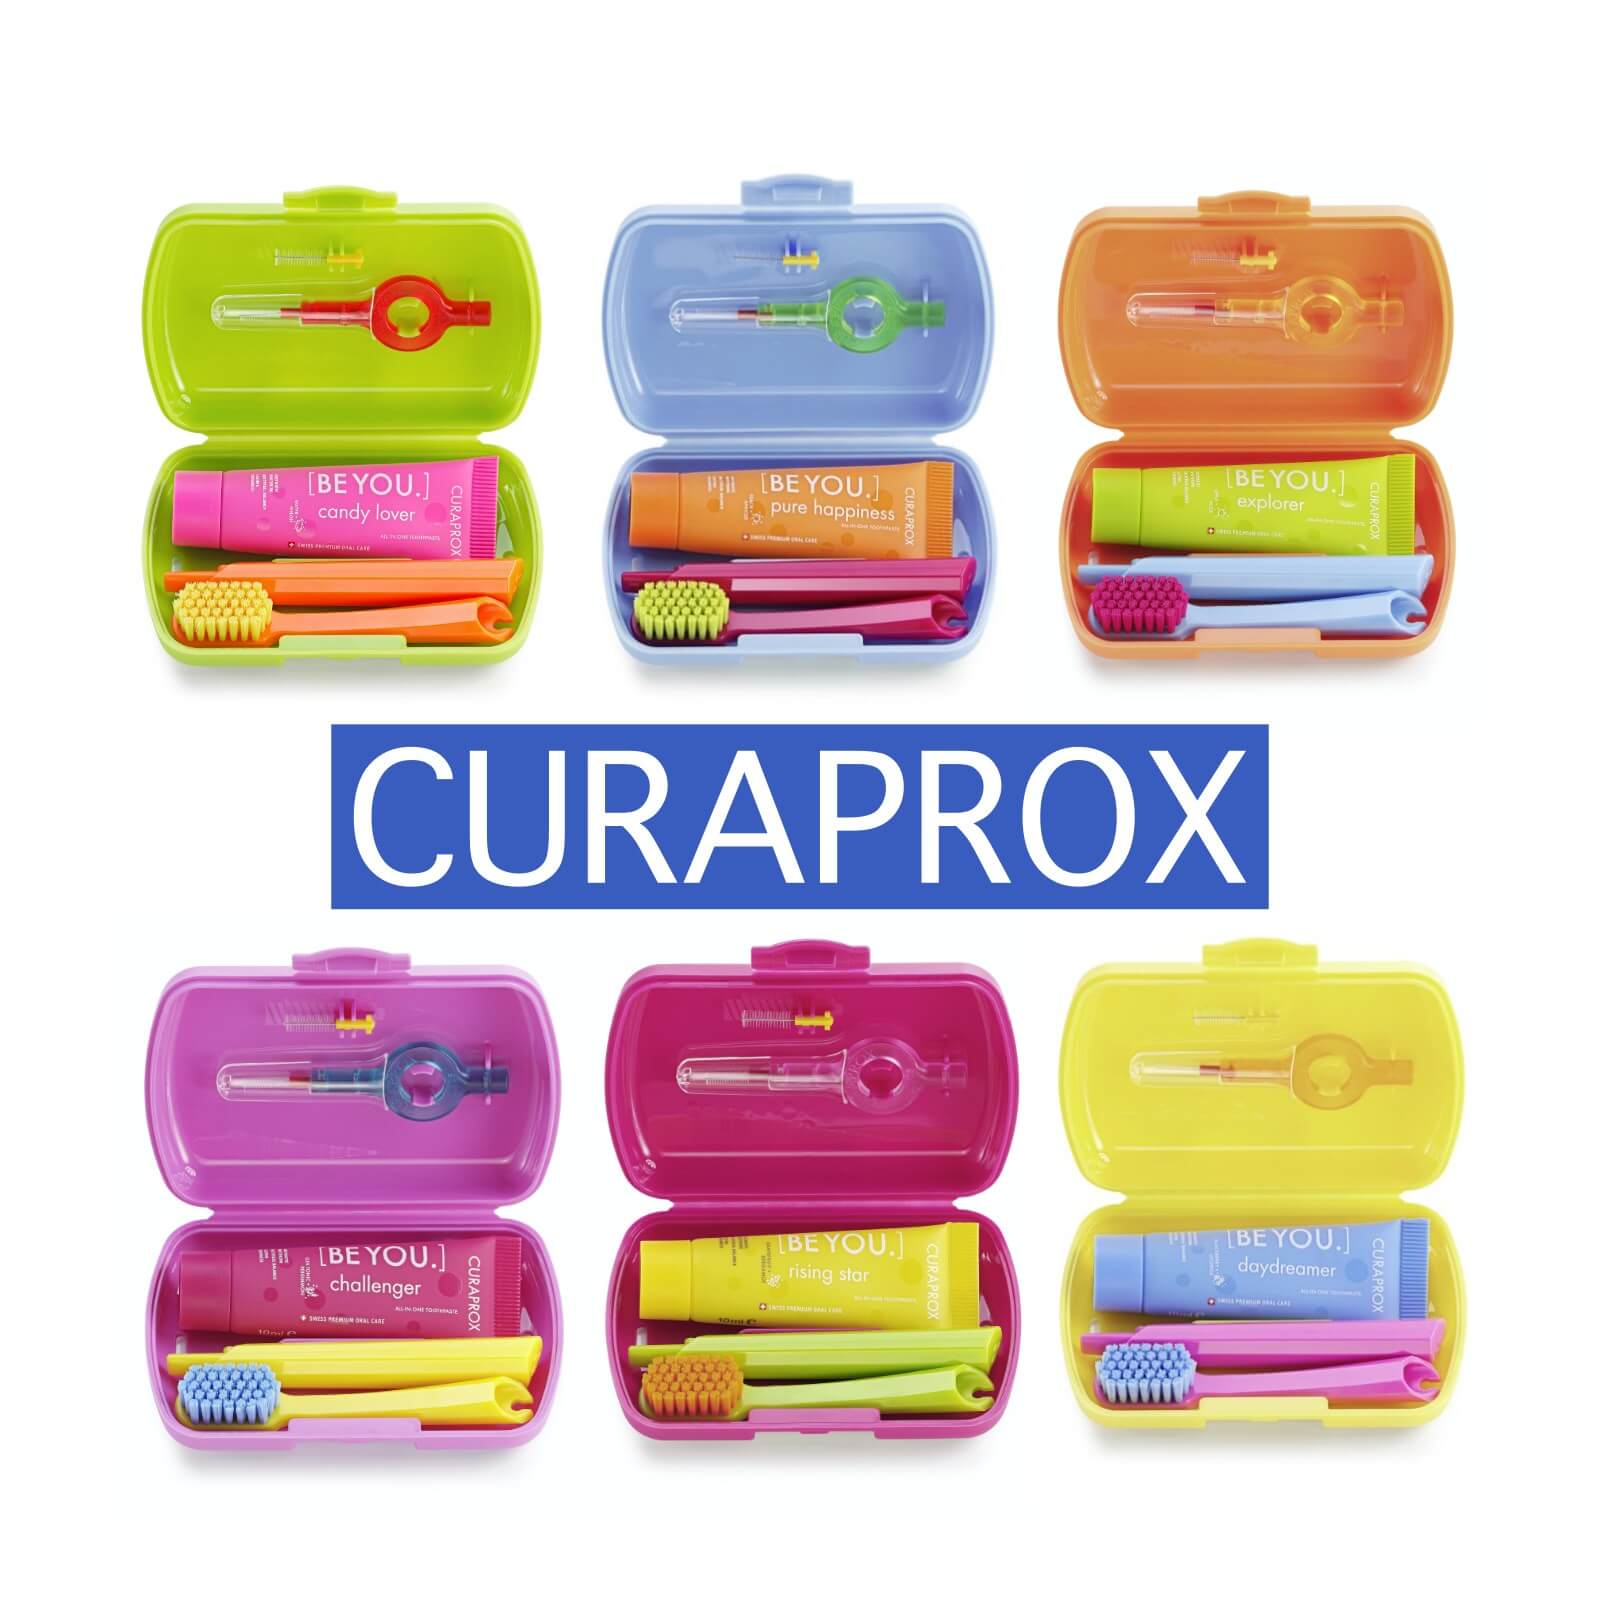 Curaprox - Stylisch bunte und innovative Zahnpflege - Alles für die perfekte Mundpflege - Curaprox Travel Set